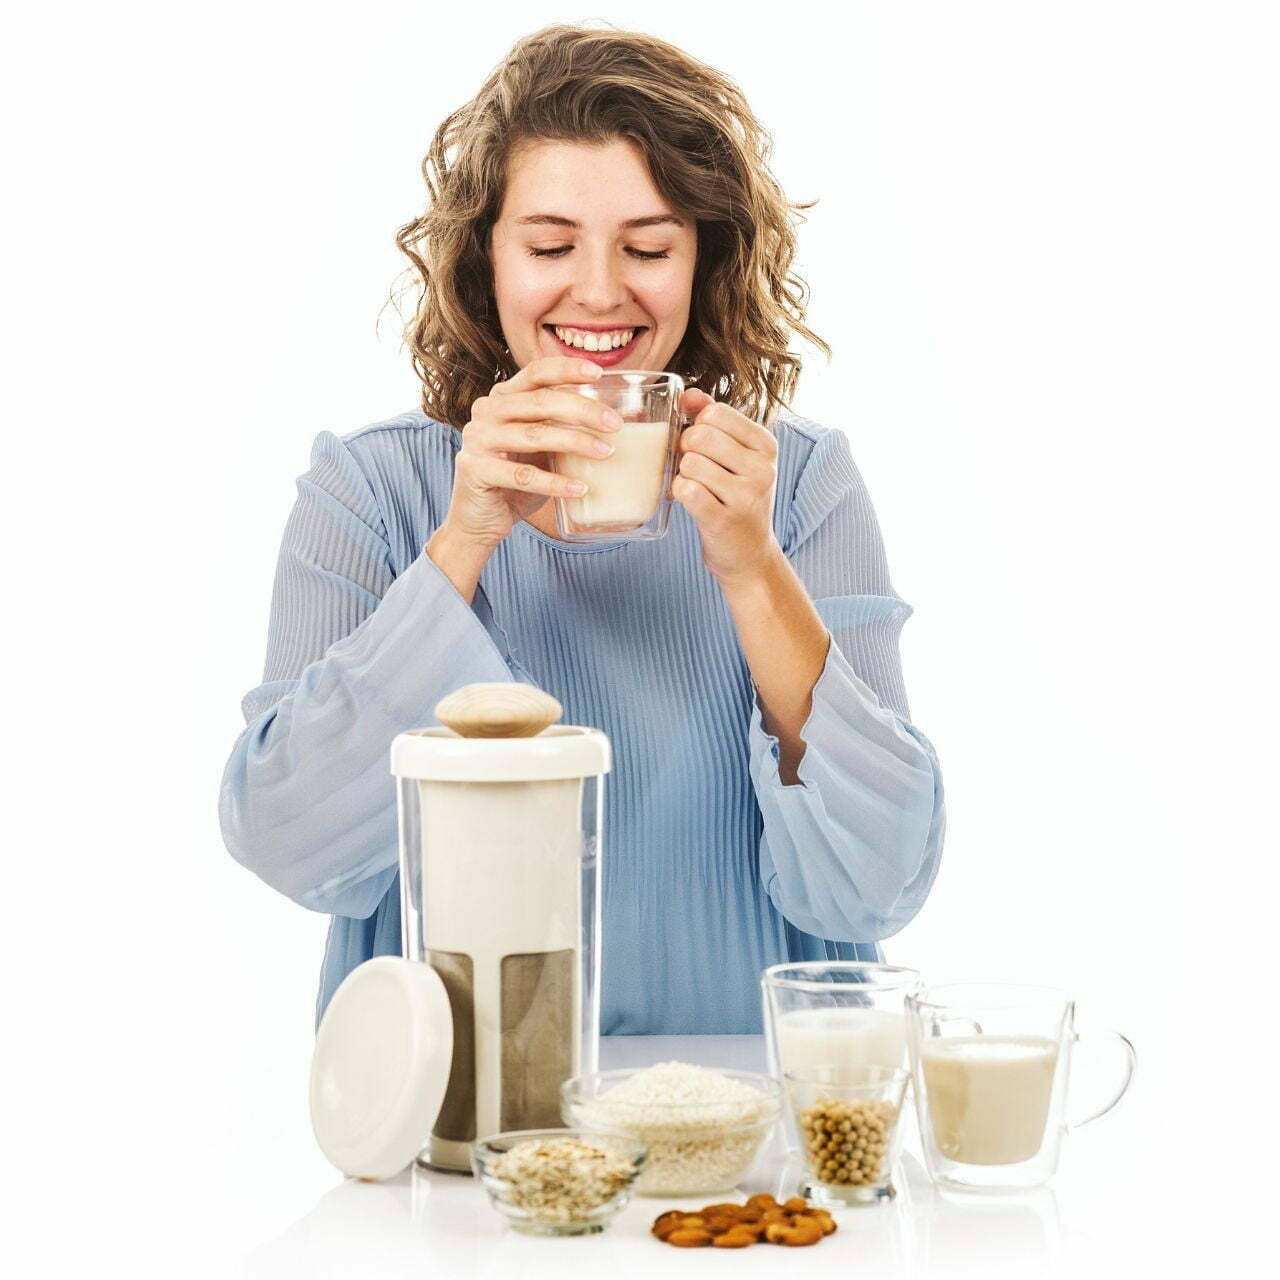 Vegane Milch Mixer Zubereiter Vegan Milk Chufamix für Hafermilch